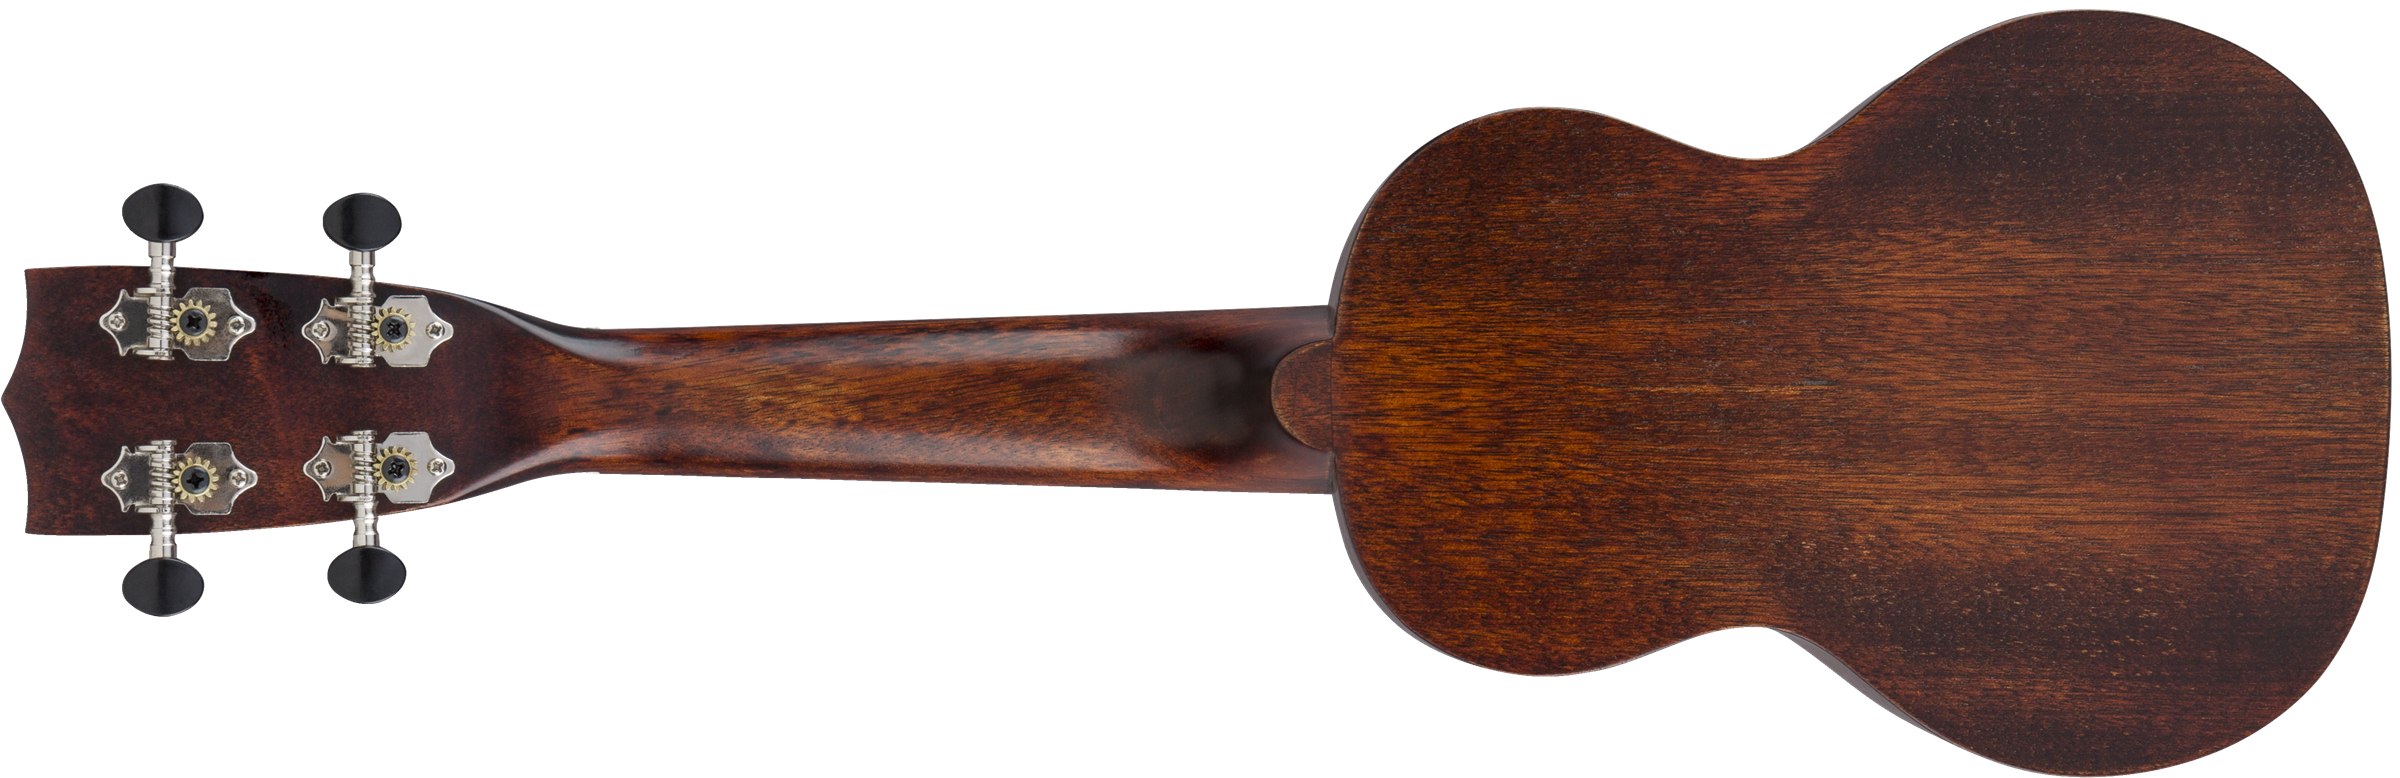 Gretsch G9100 Soprano Standard Ukulele - Vintage Mahogany Stain